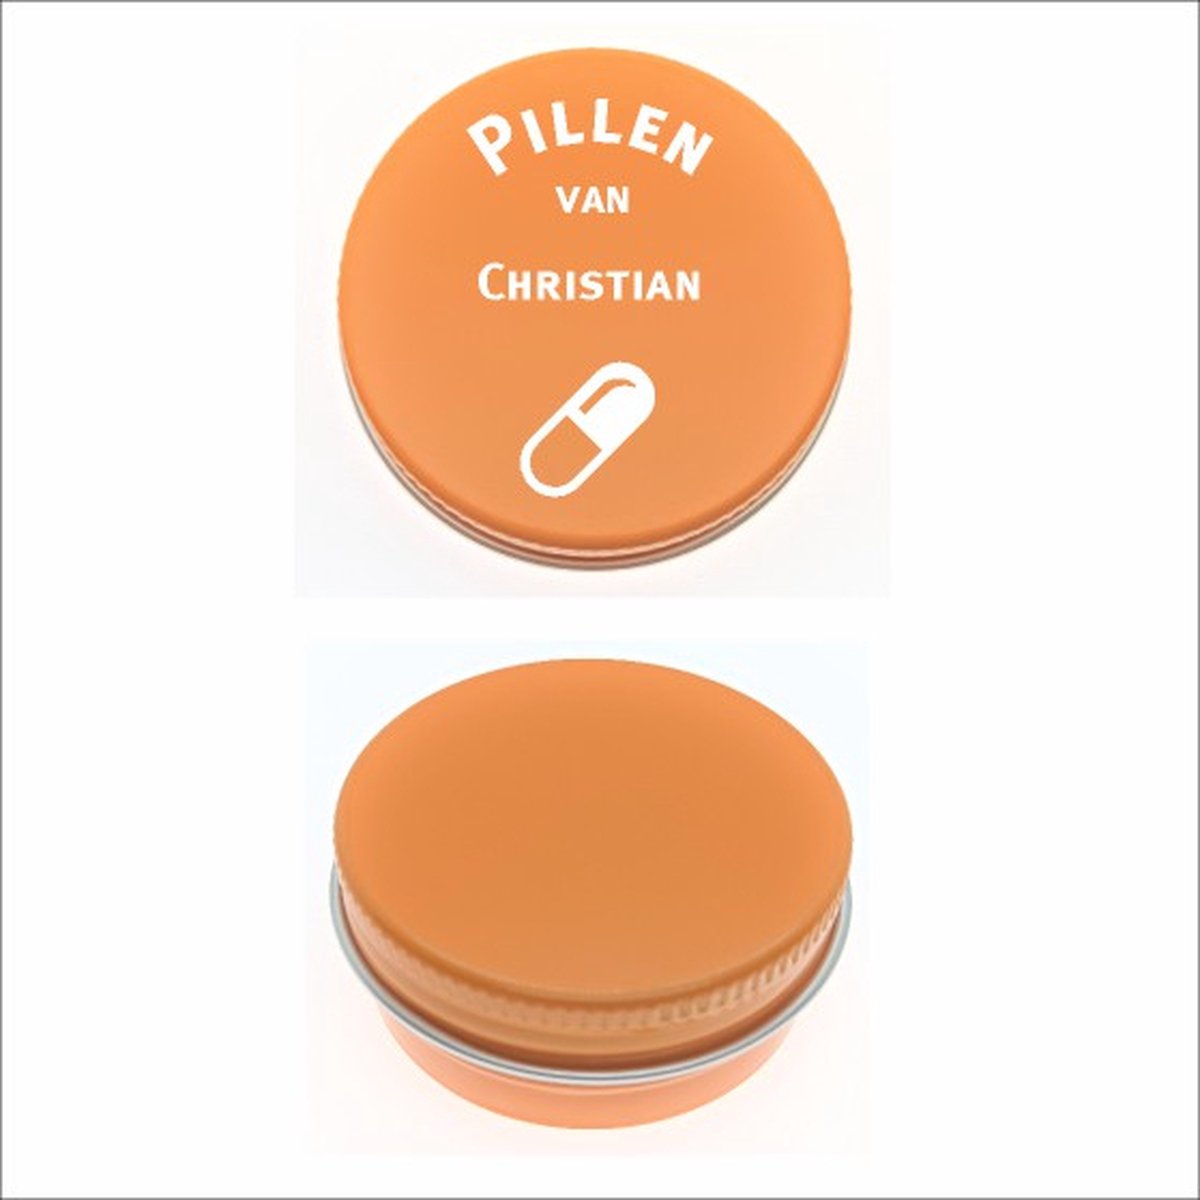 Pillen Blikje Met Naam Gravering - Christian